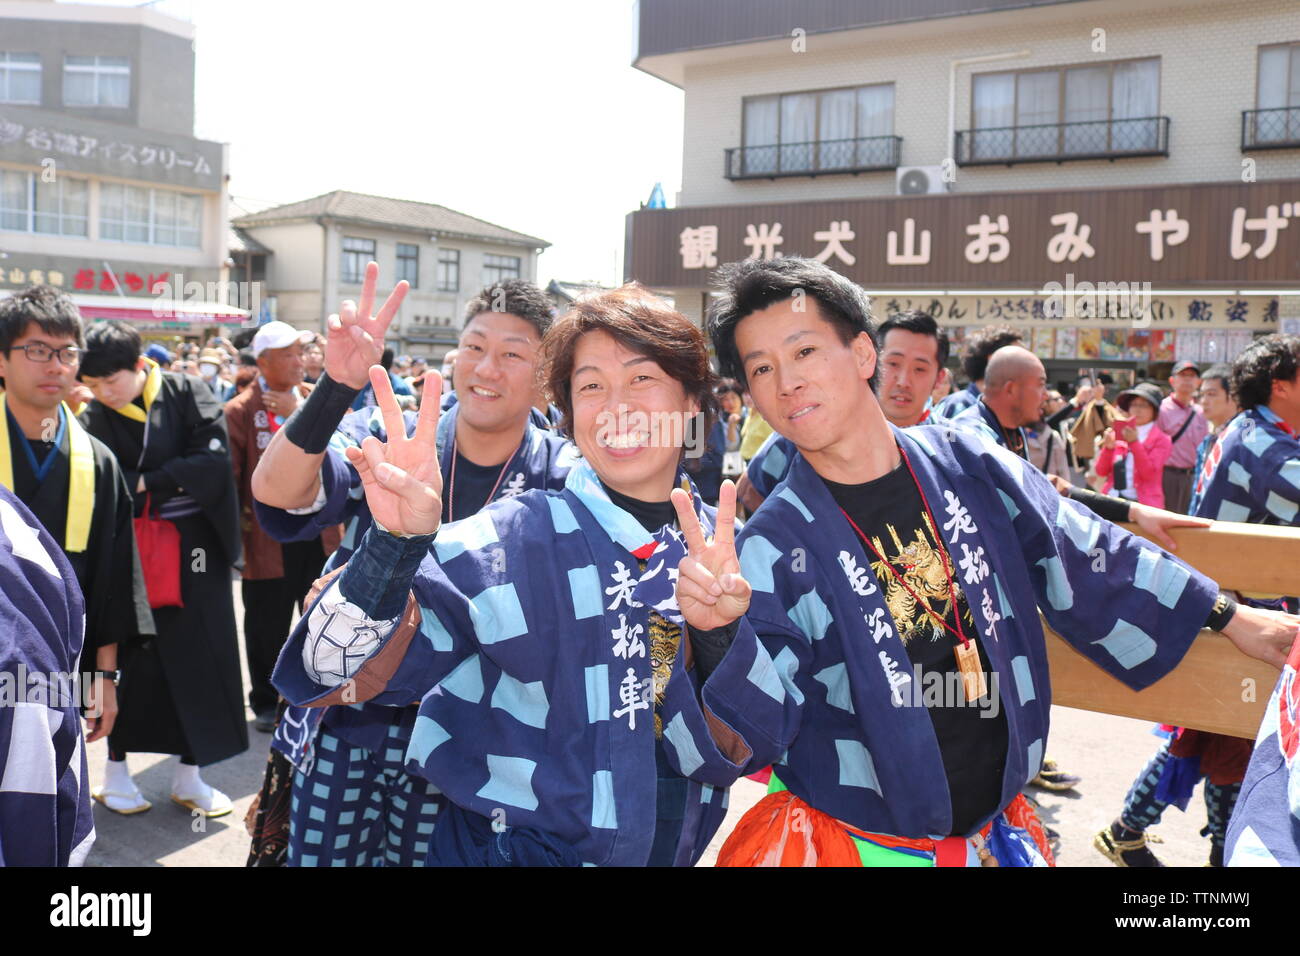 Les jeunes hommes de célébrer et de rire après avoir poussé flotte dans le festival Inuyama montrant le geste de paix deux doigts Banque D'Images